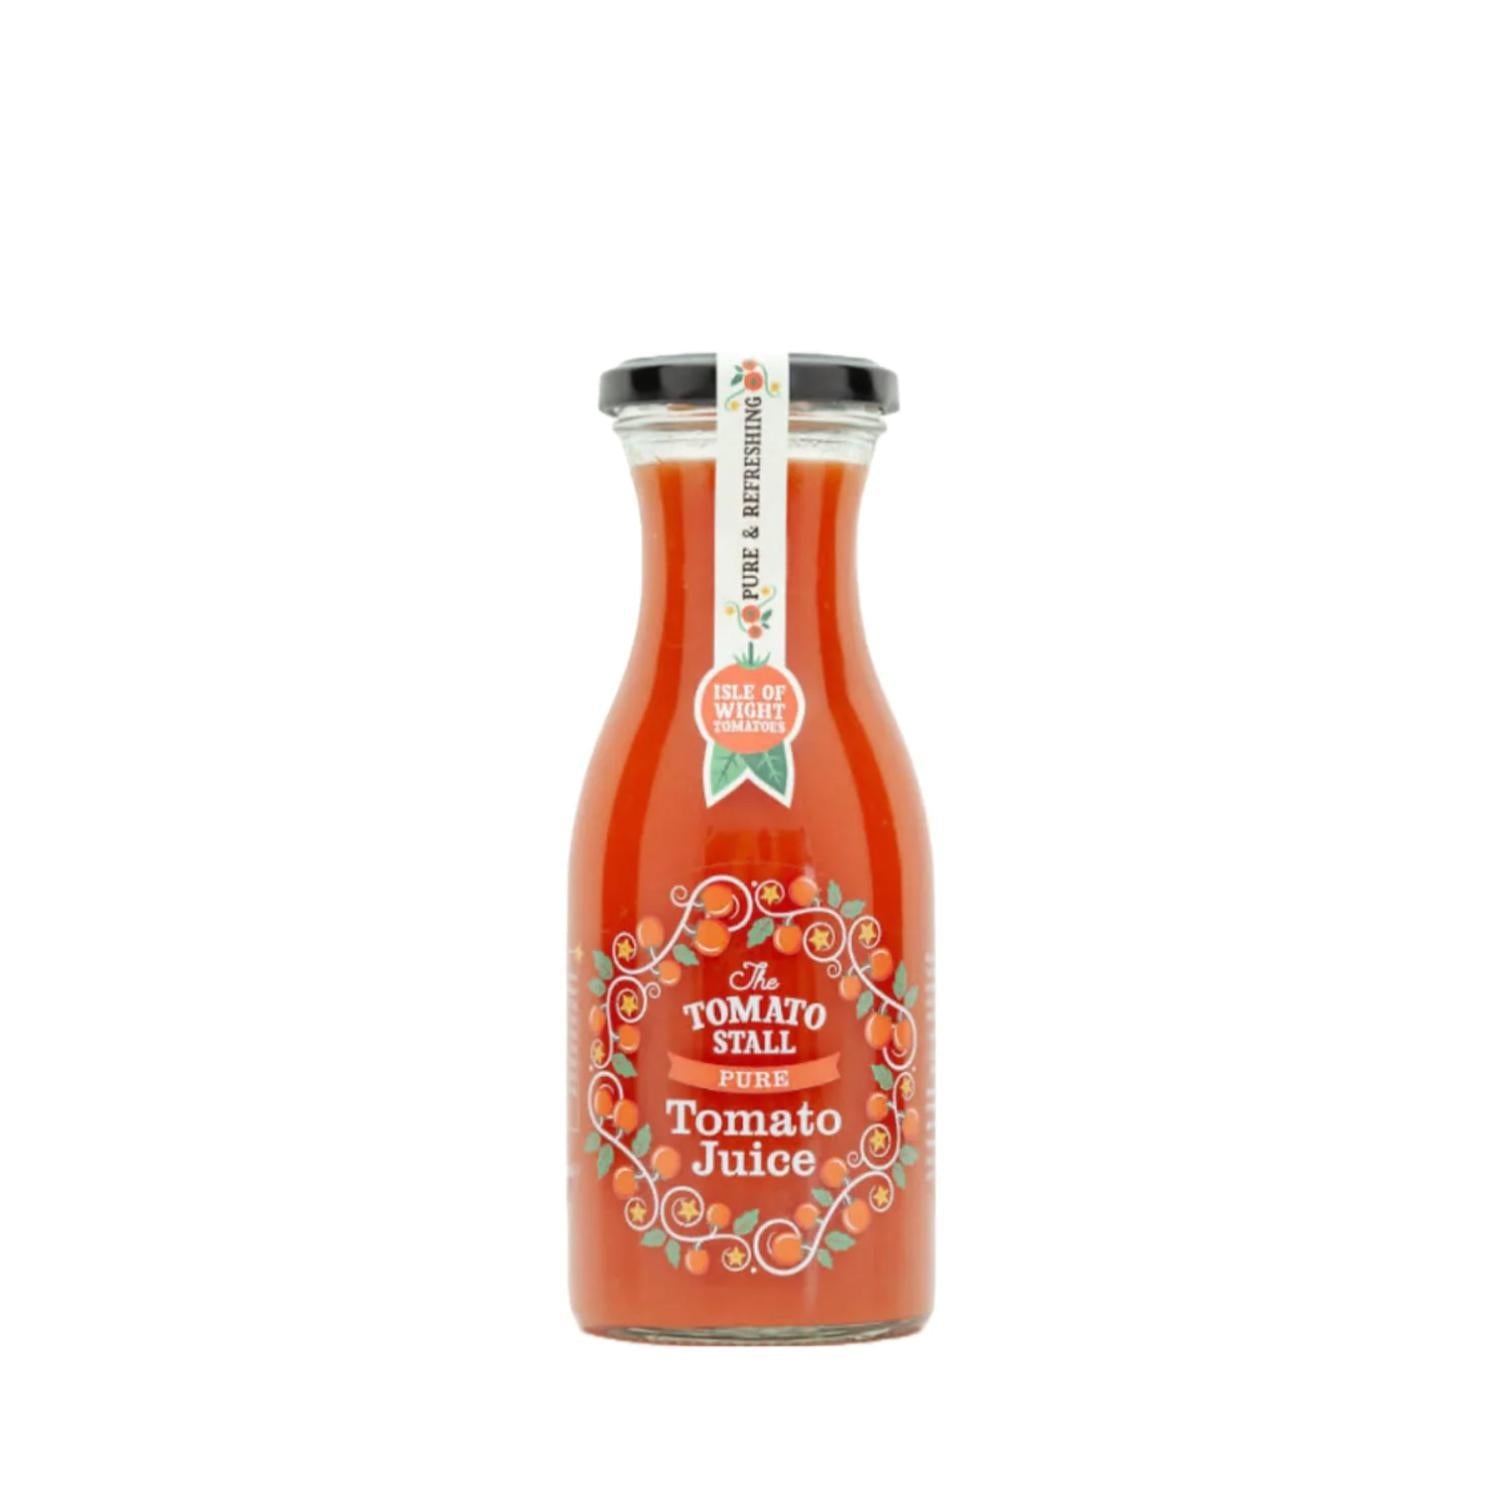 Tomato Stall - Tomato Juice